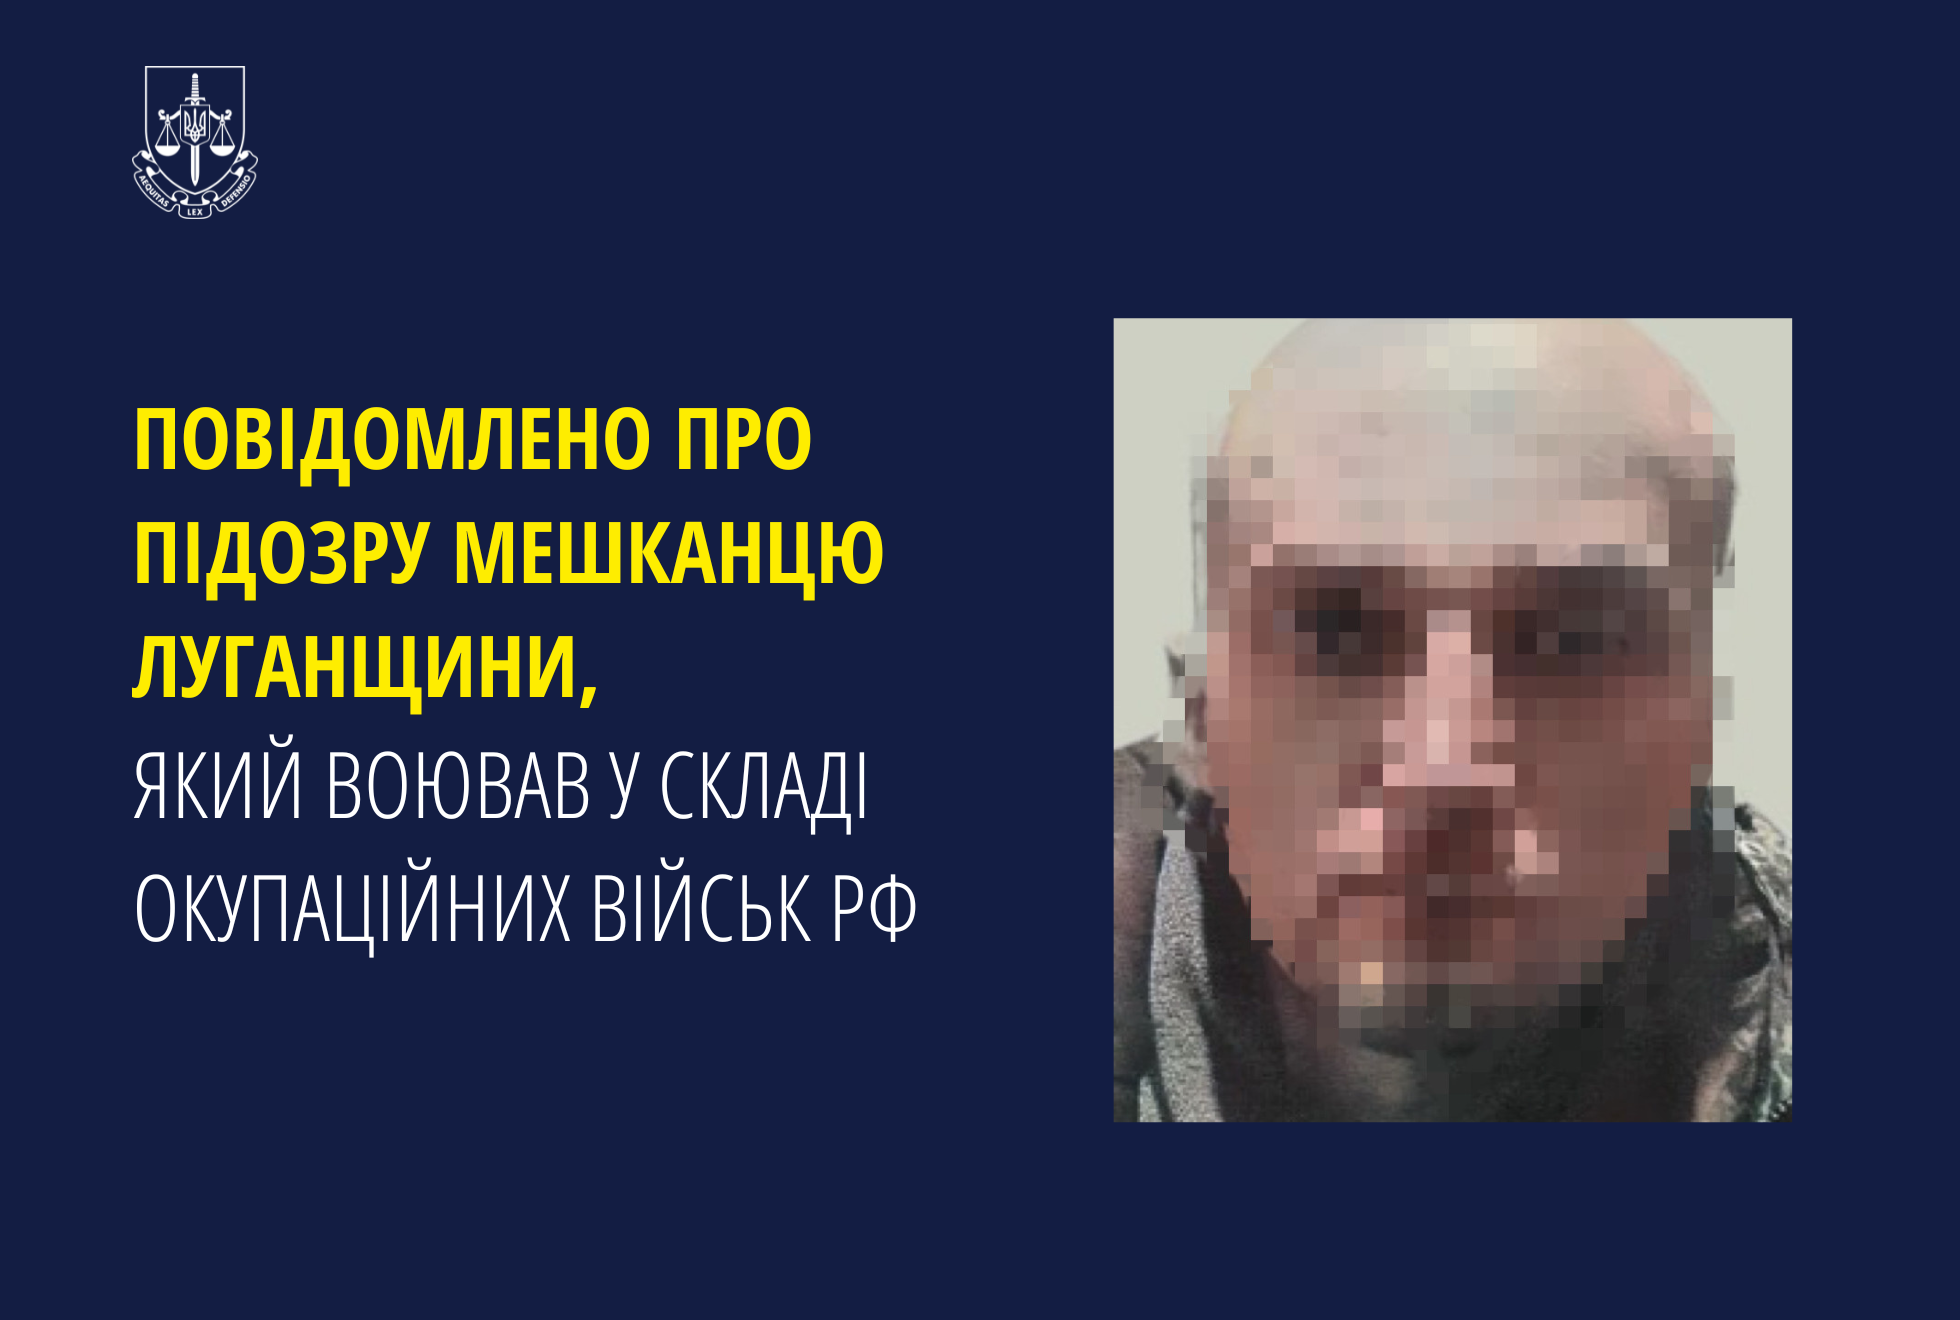 Повідомлено про підозру мешканцю Луганщини, який воював у складі окупаційних військ рф